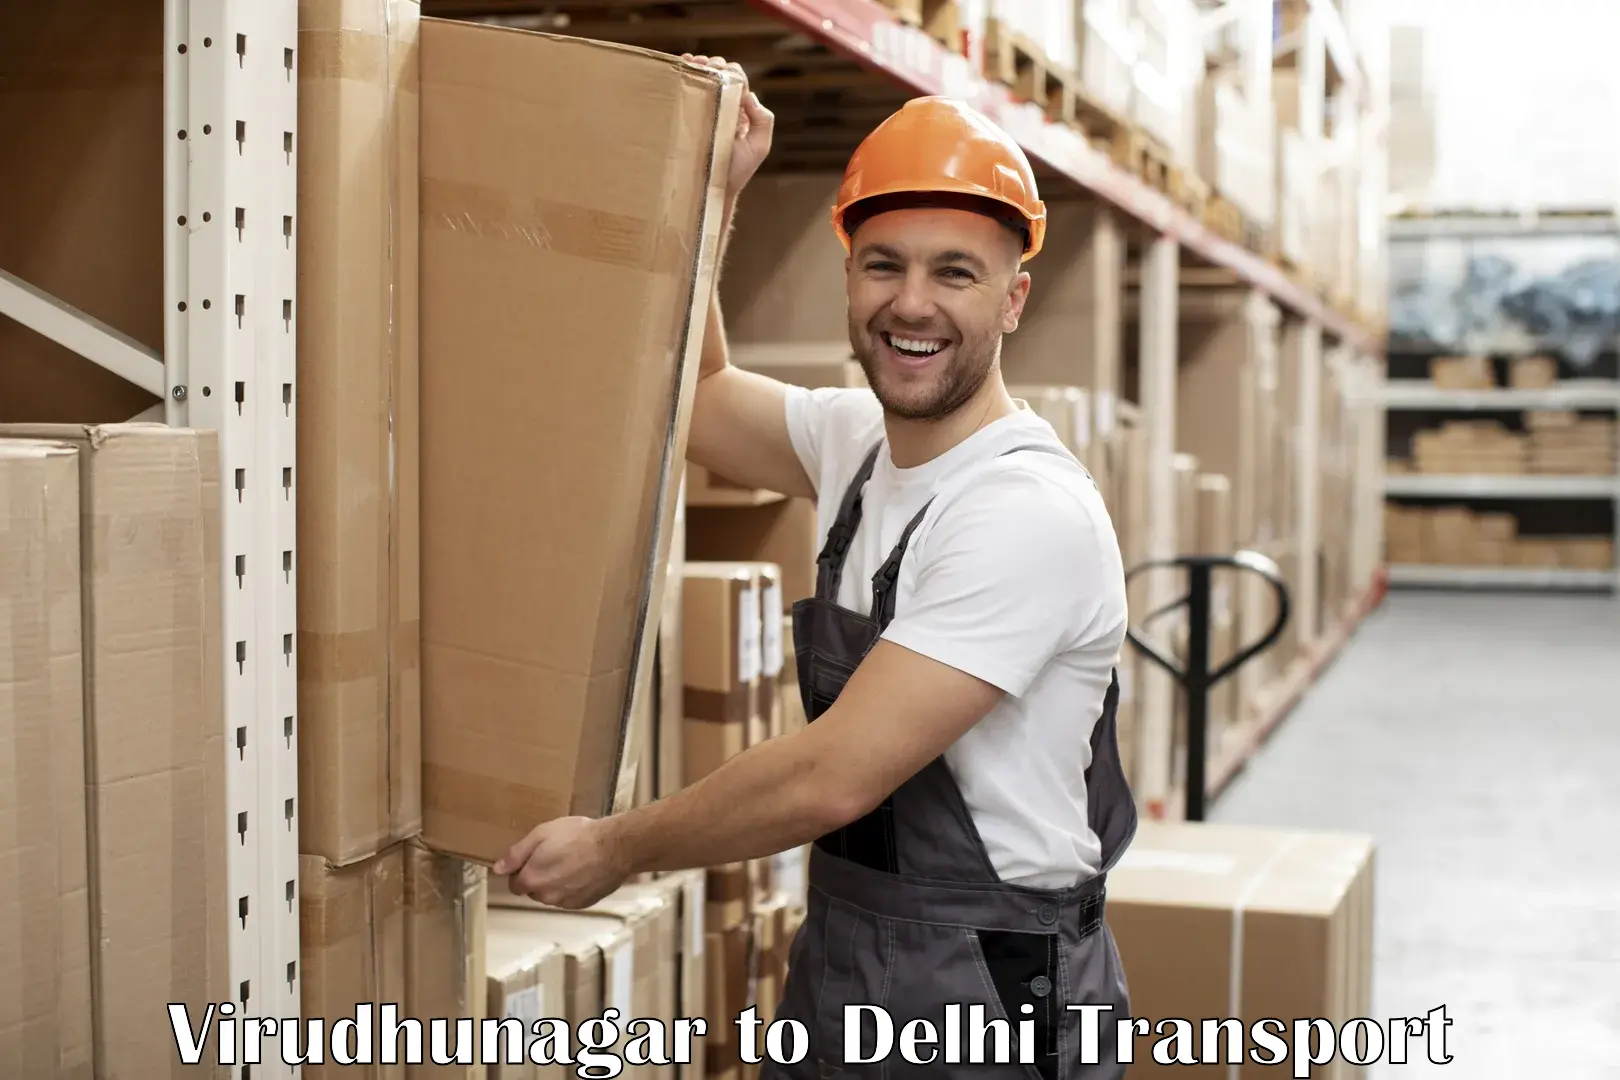 Delivery service Virudhunagar to Delhi